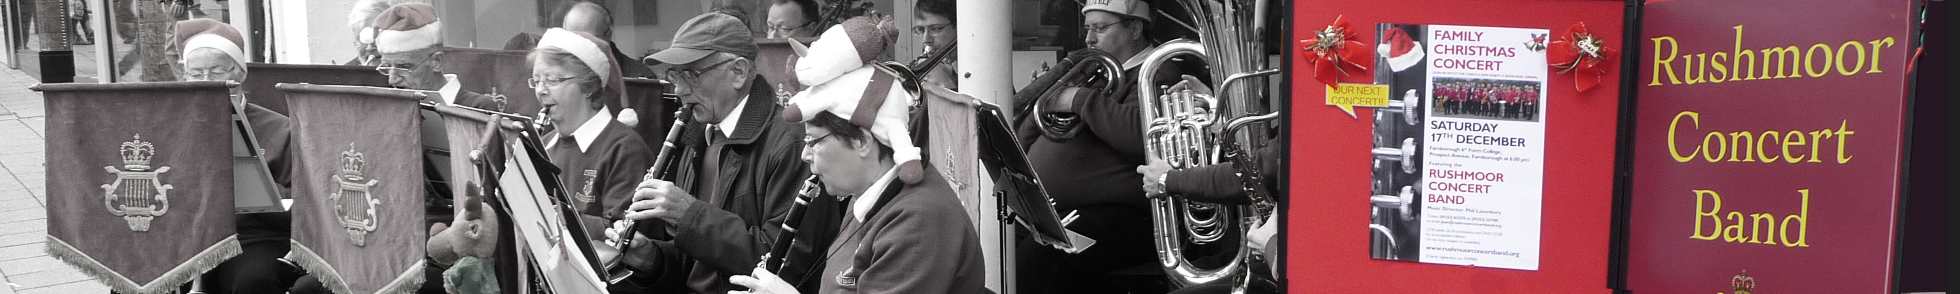 Rushmoor band at Christmas